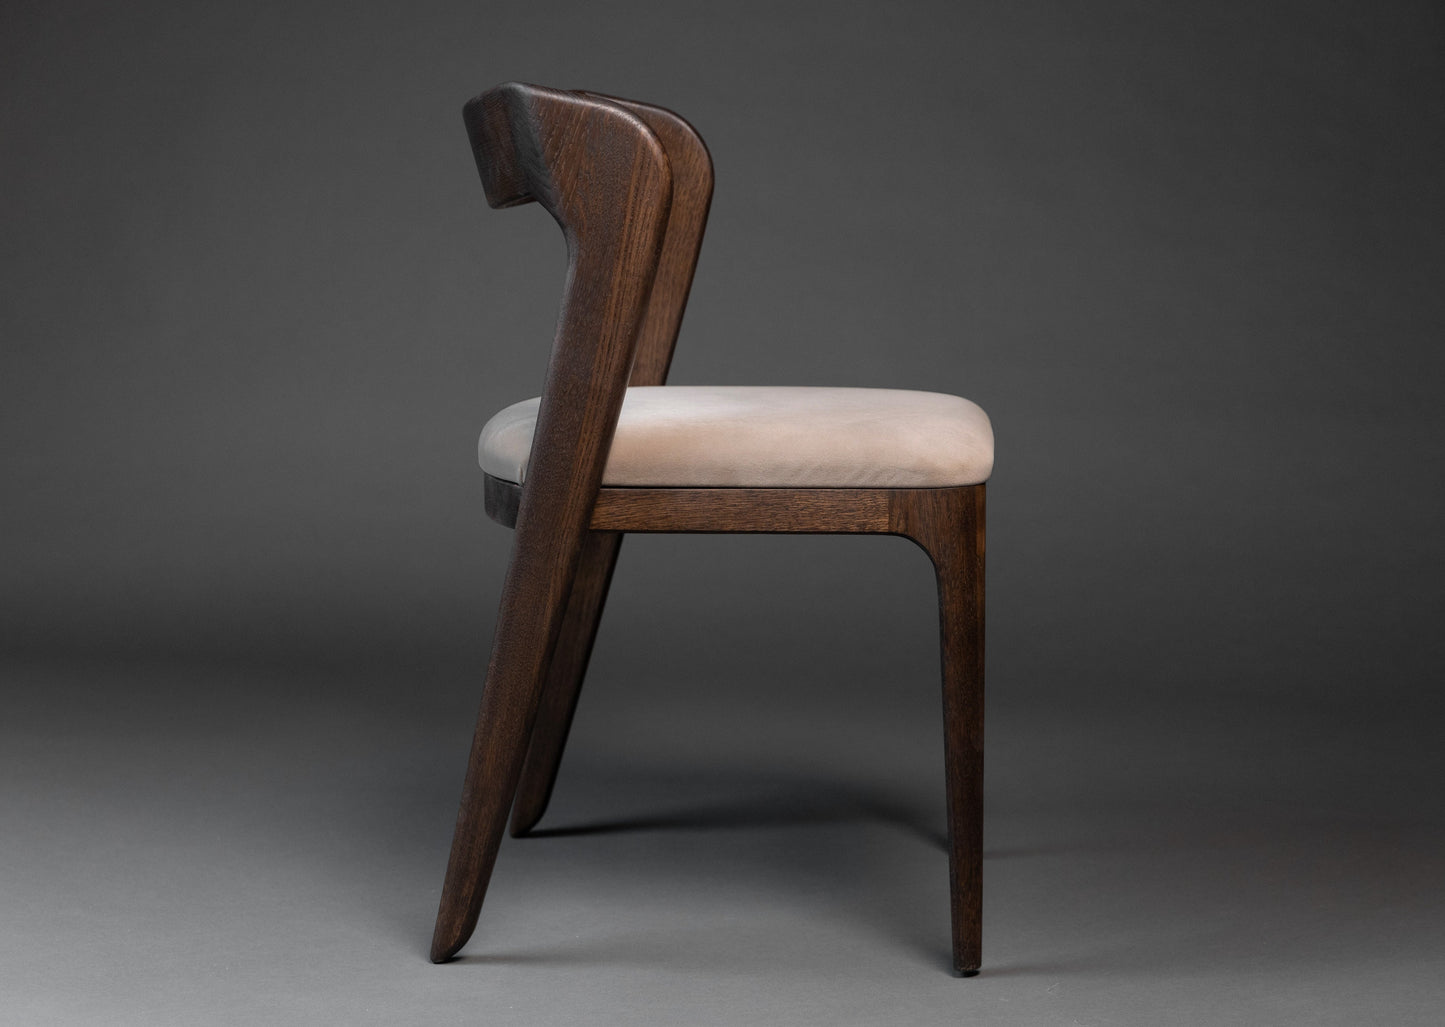 Stolen Vera er håndlaget i heltre eik som har et elegant eikmønster. Sittedelen er laget av tekstil.